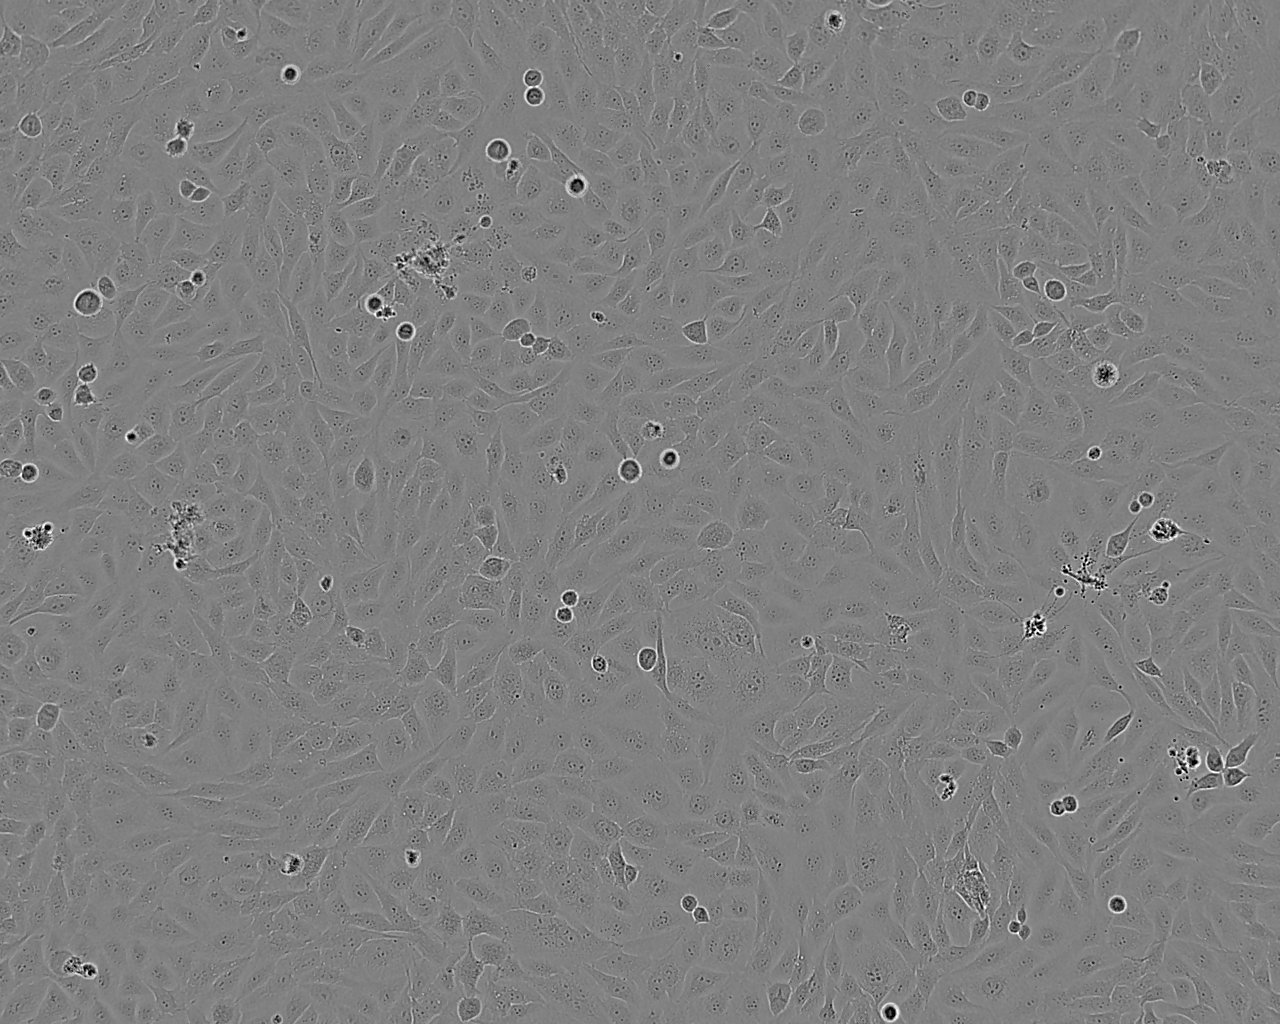 U-251MG epithelioid cells人神经胶质瘤细胞系,U-251MG epithelioid cells